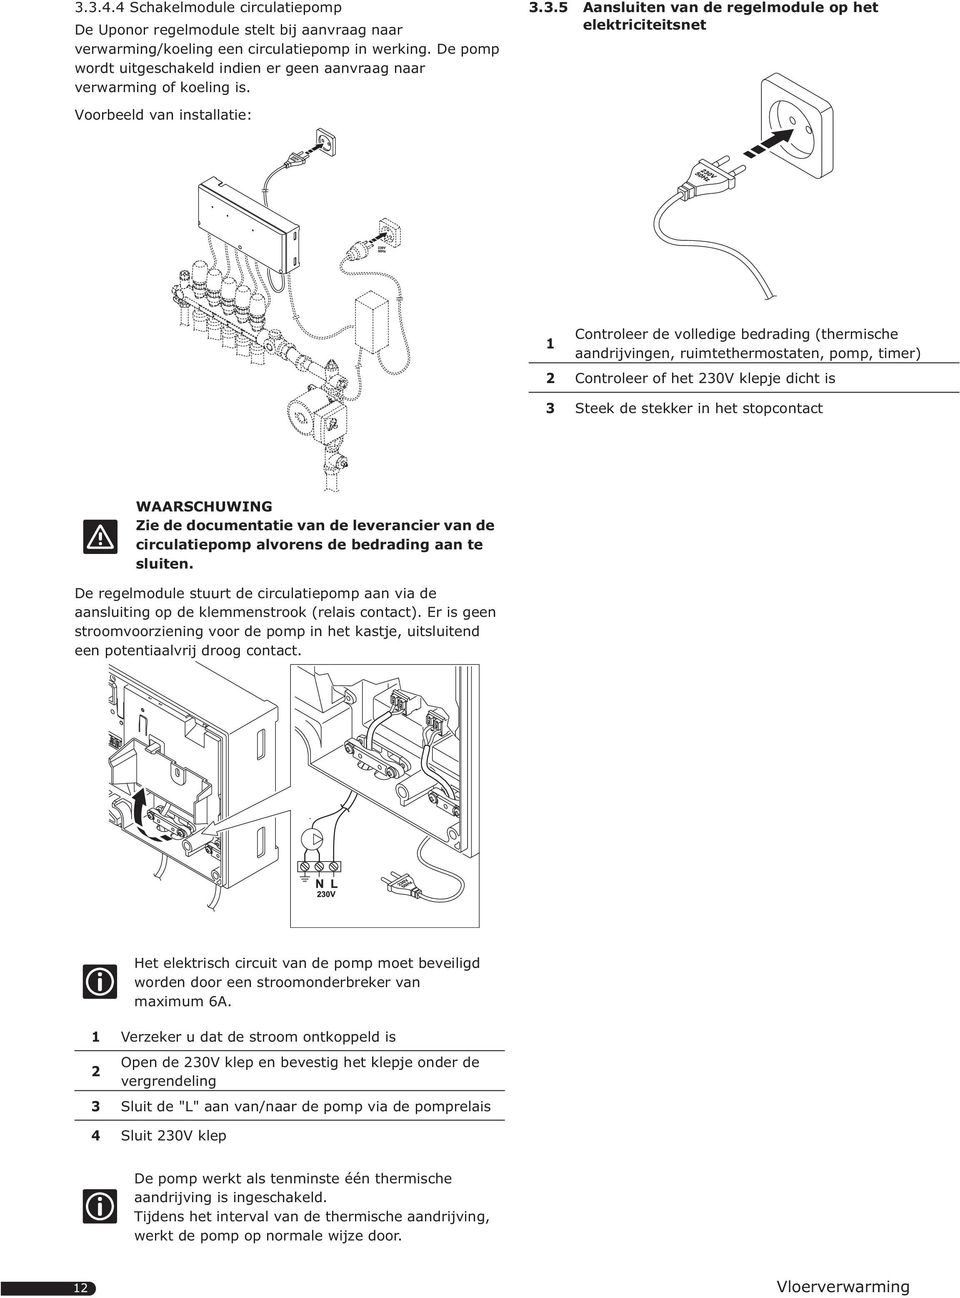 3.5 Aansluiten van de regelmodule op het elektriciteitsnet Voorbeeld van installatie: Controleer de volledige bedrading (thermische aandrijvingen, ruimtethermostaten, pomp, timer) Controleer of het